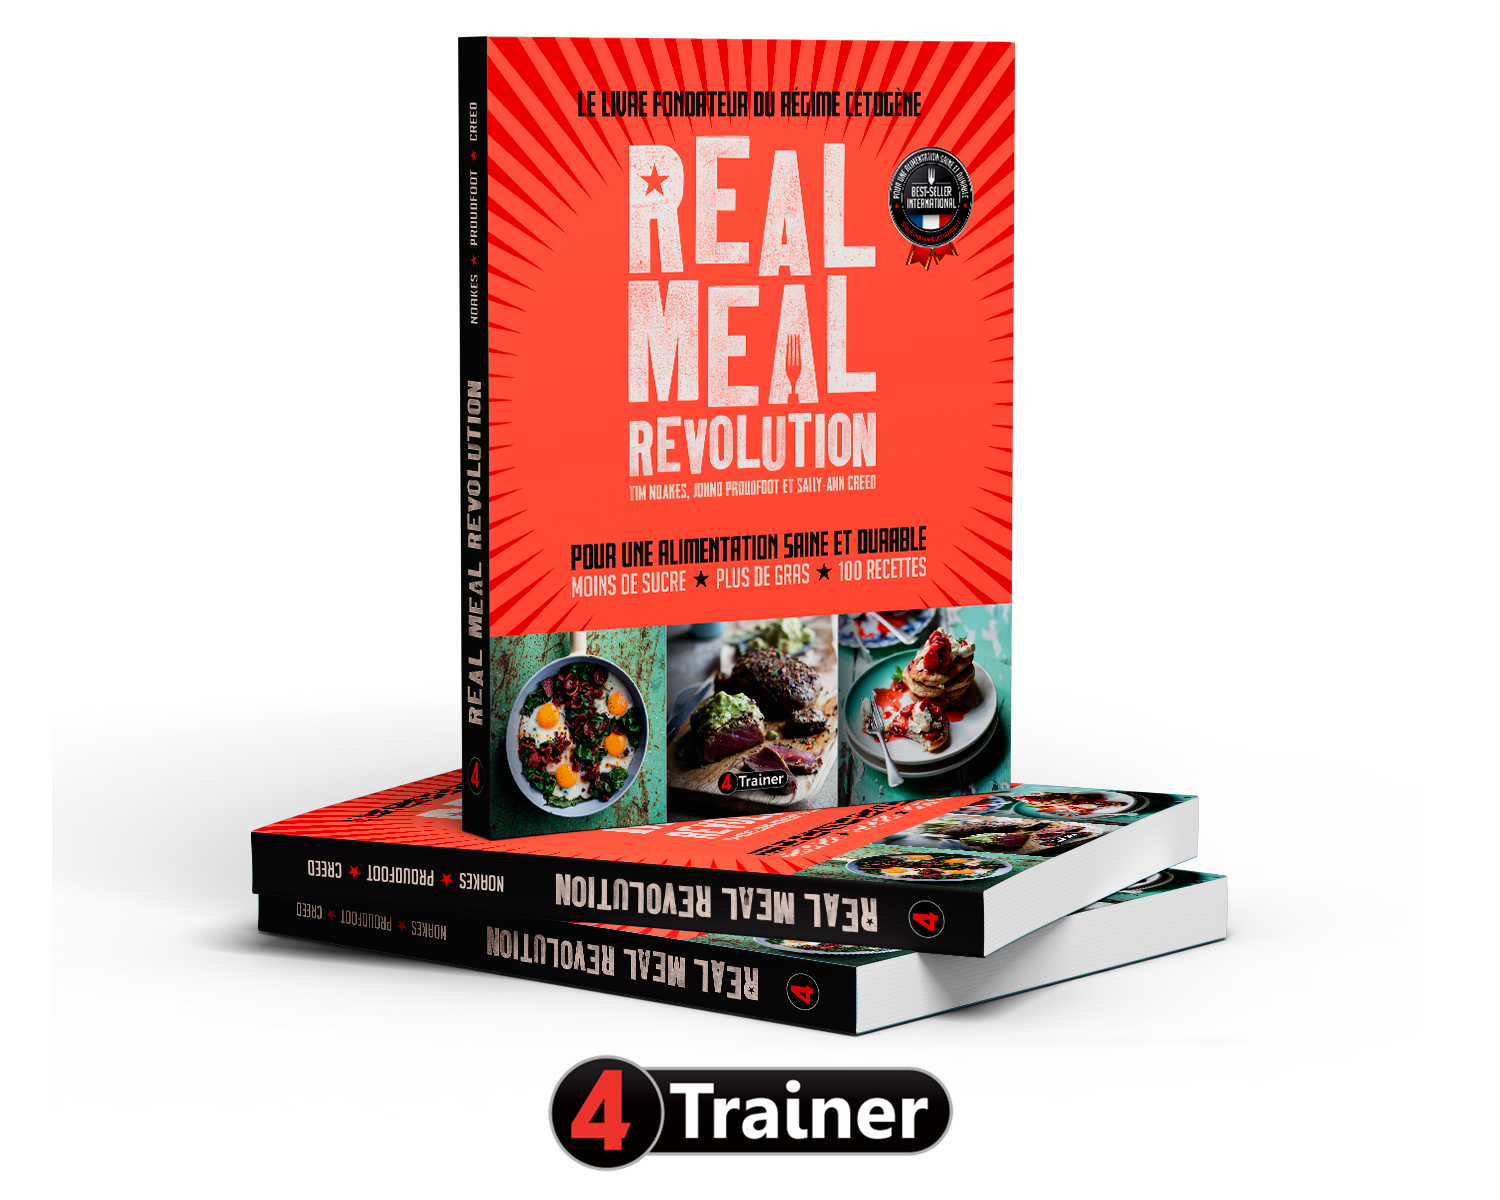 Real Meal Revolution - Le Livre Fondateur du Régime Cétogène